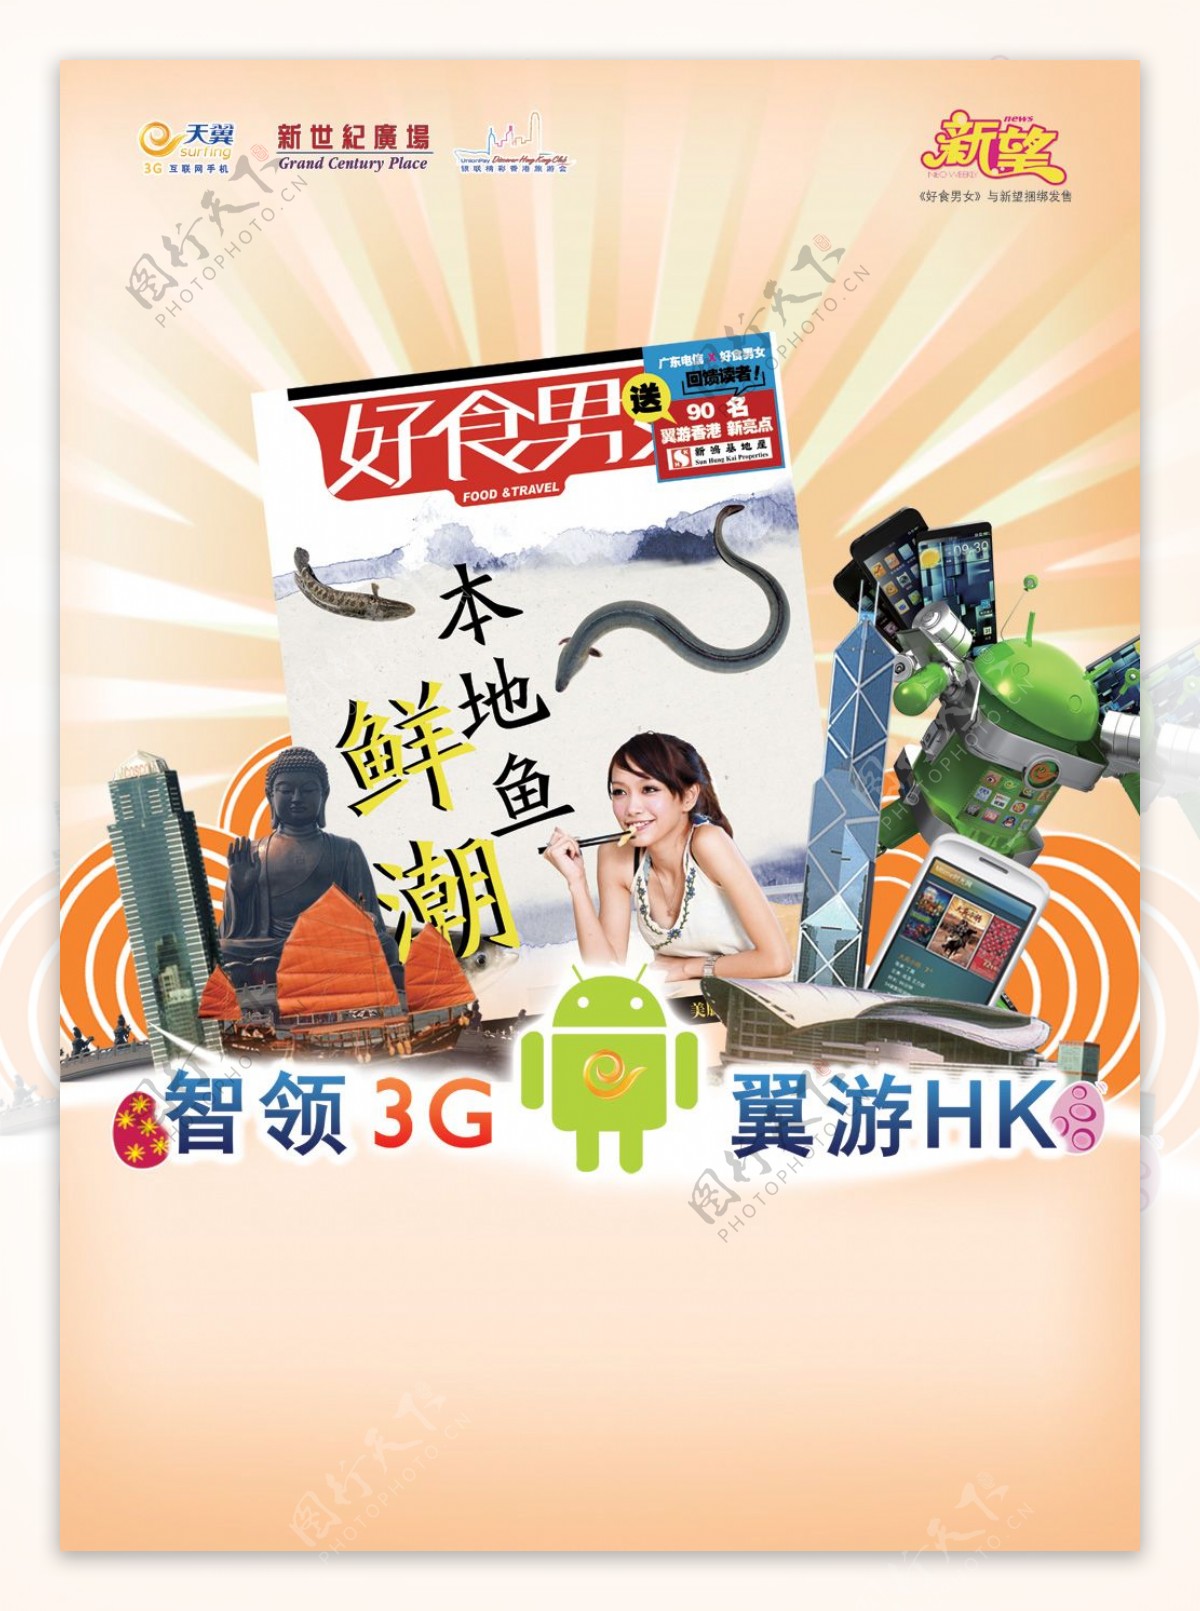 电信天翼3G业务广告